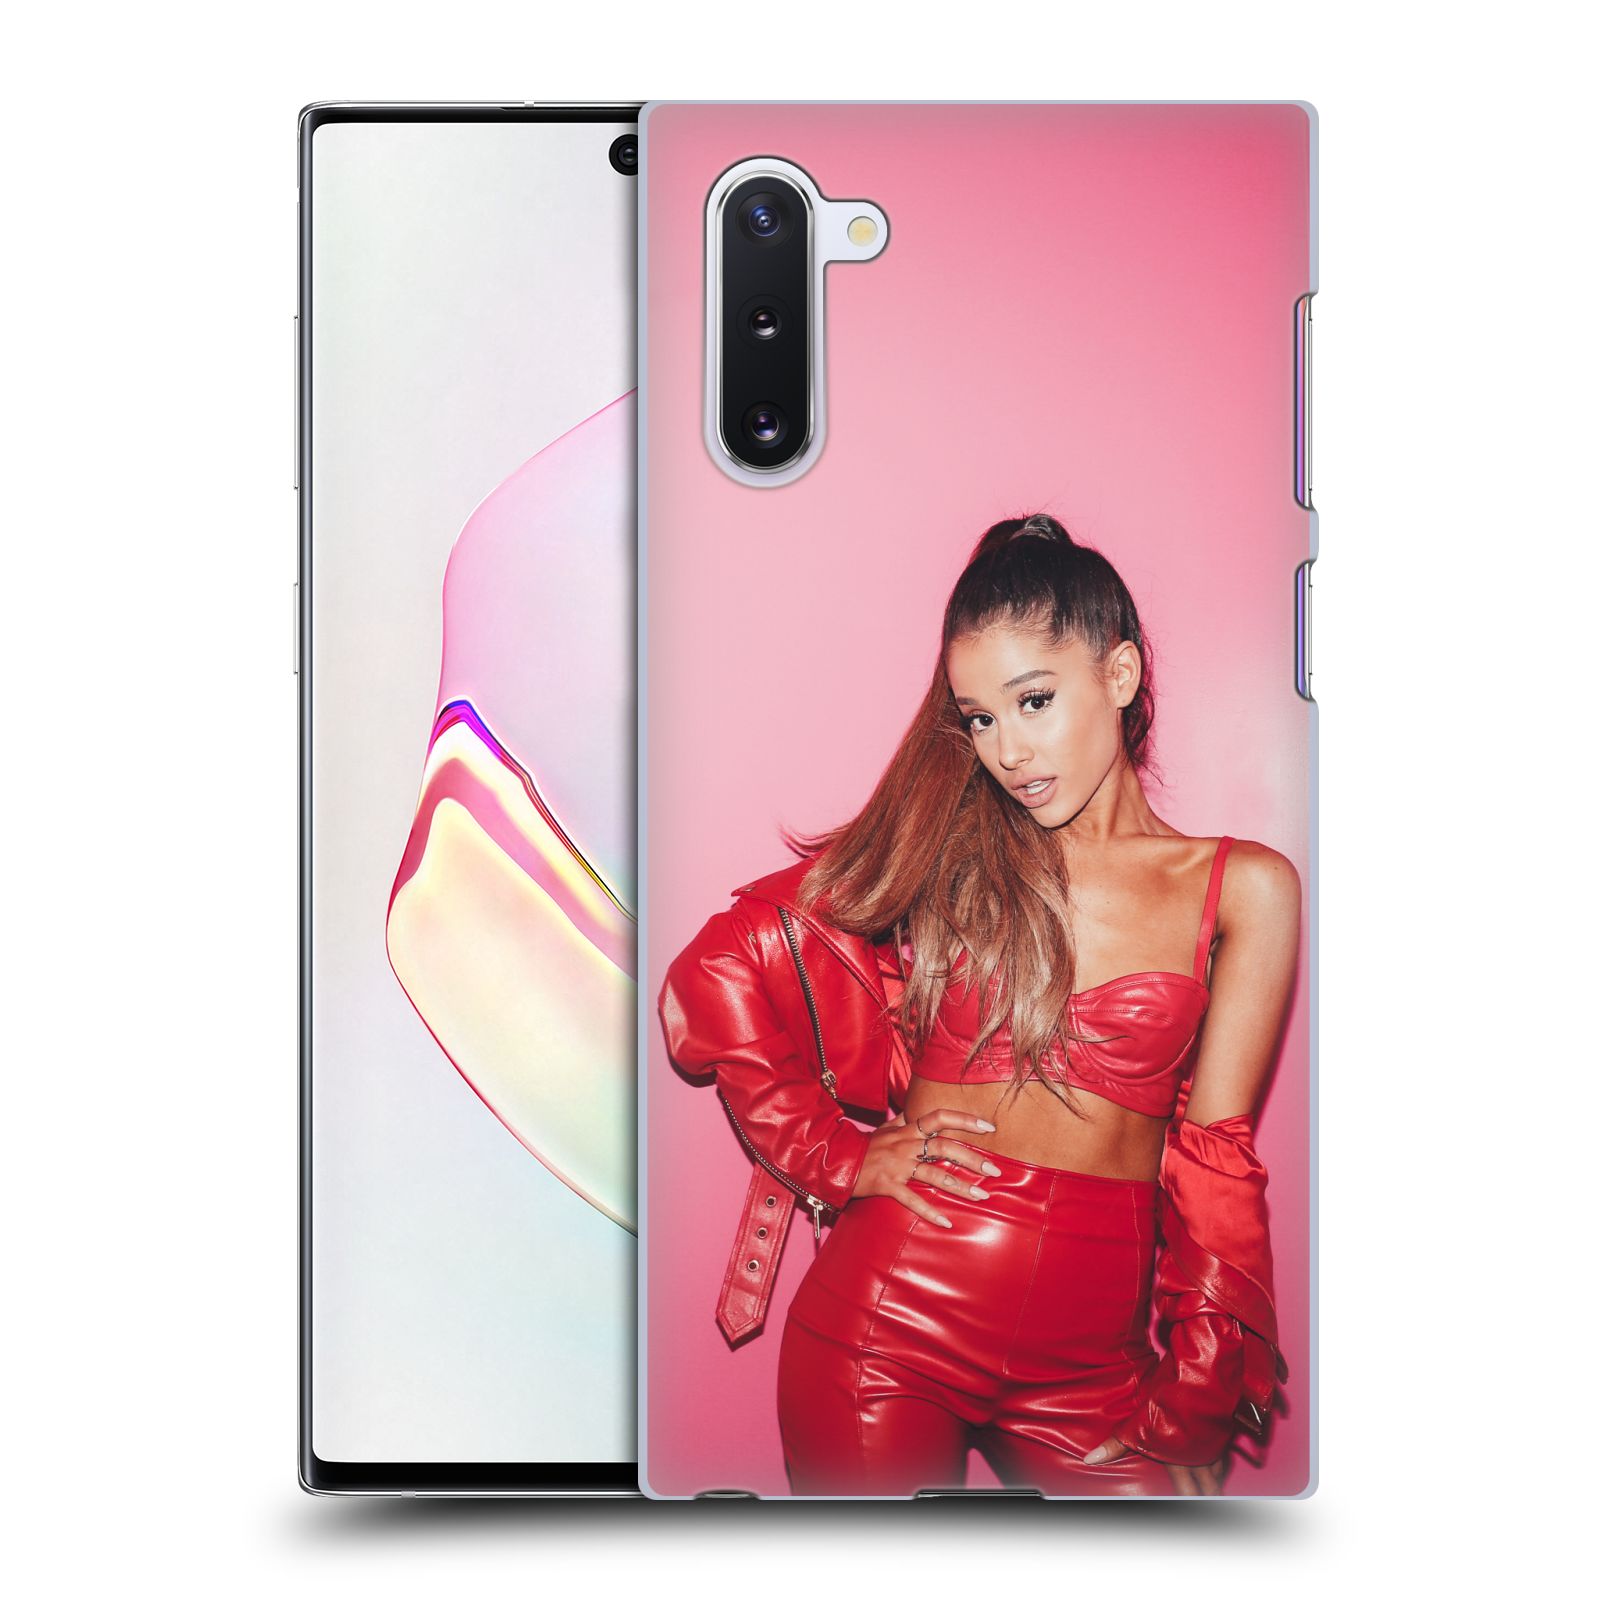 Pouzdro na mobil Samsung Galaxy Note 10 - HEAD CASE - zpěvačka Ariana Grande Dangerous Woman růžová